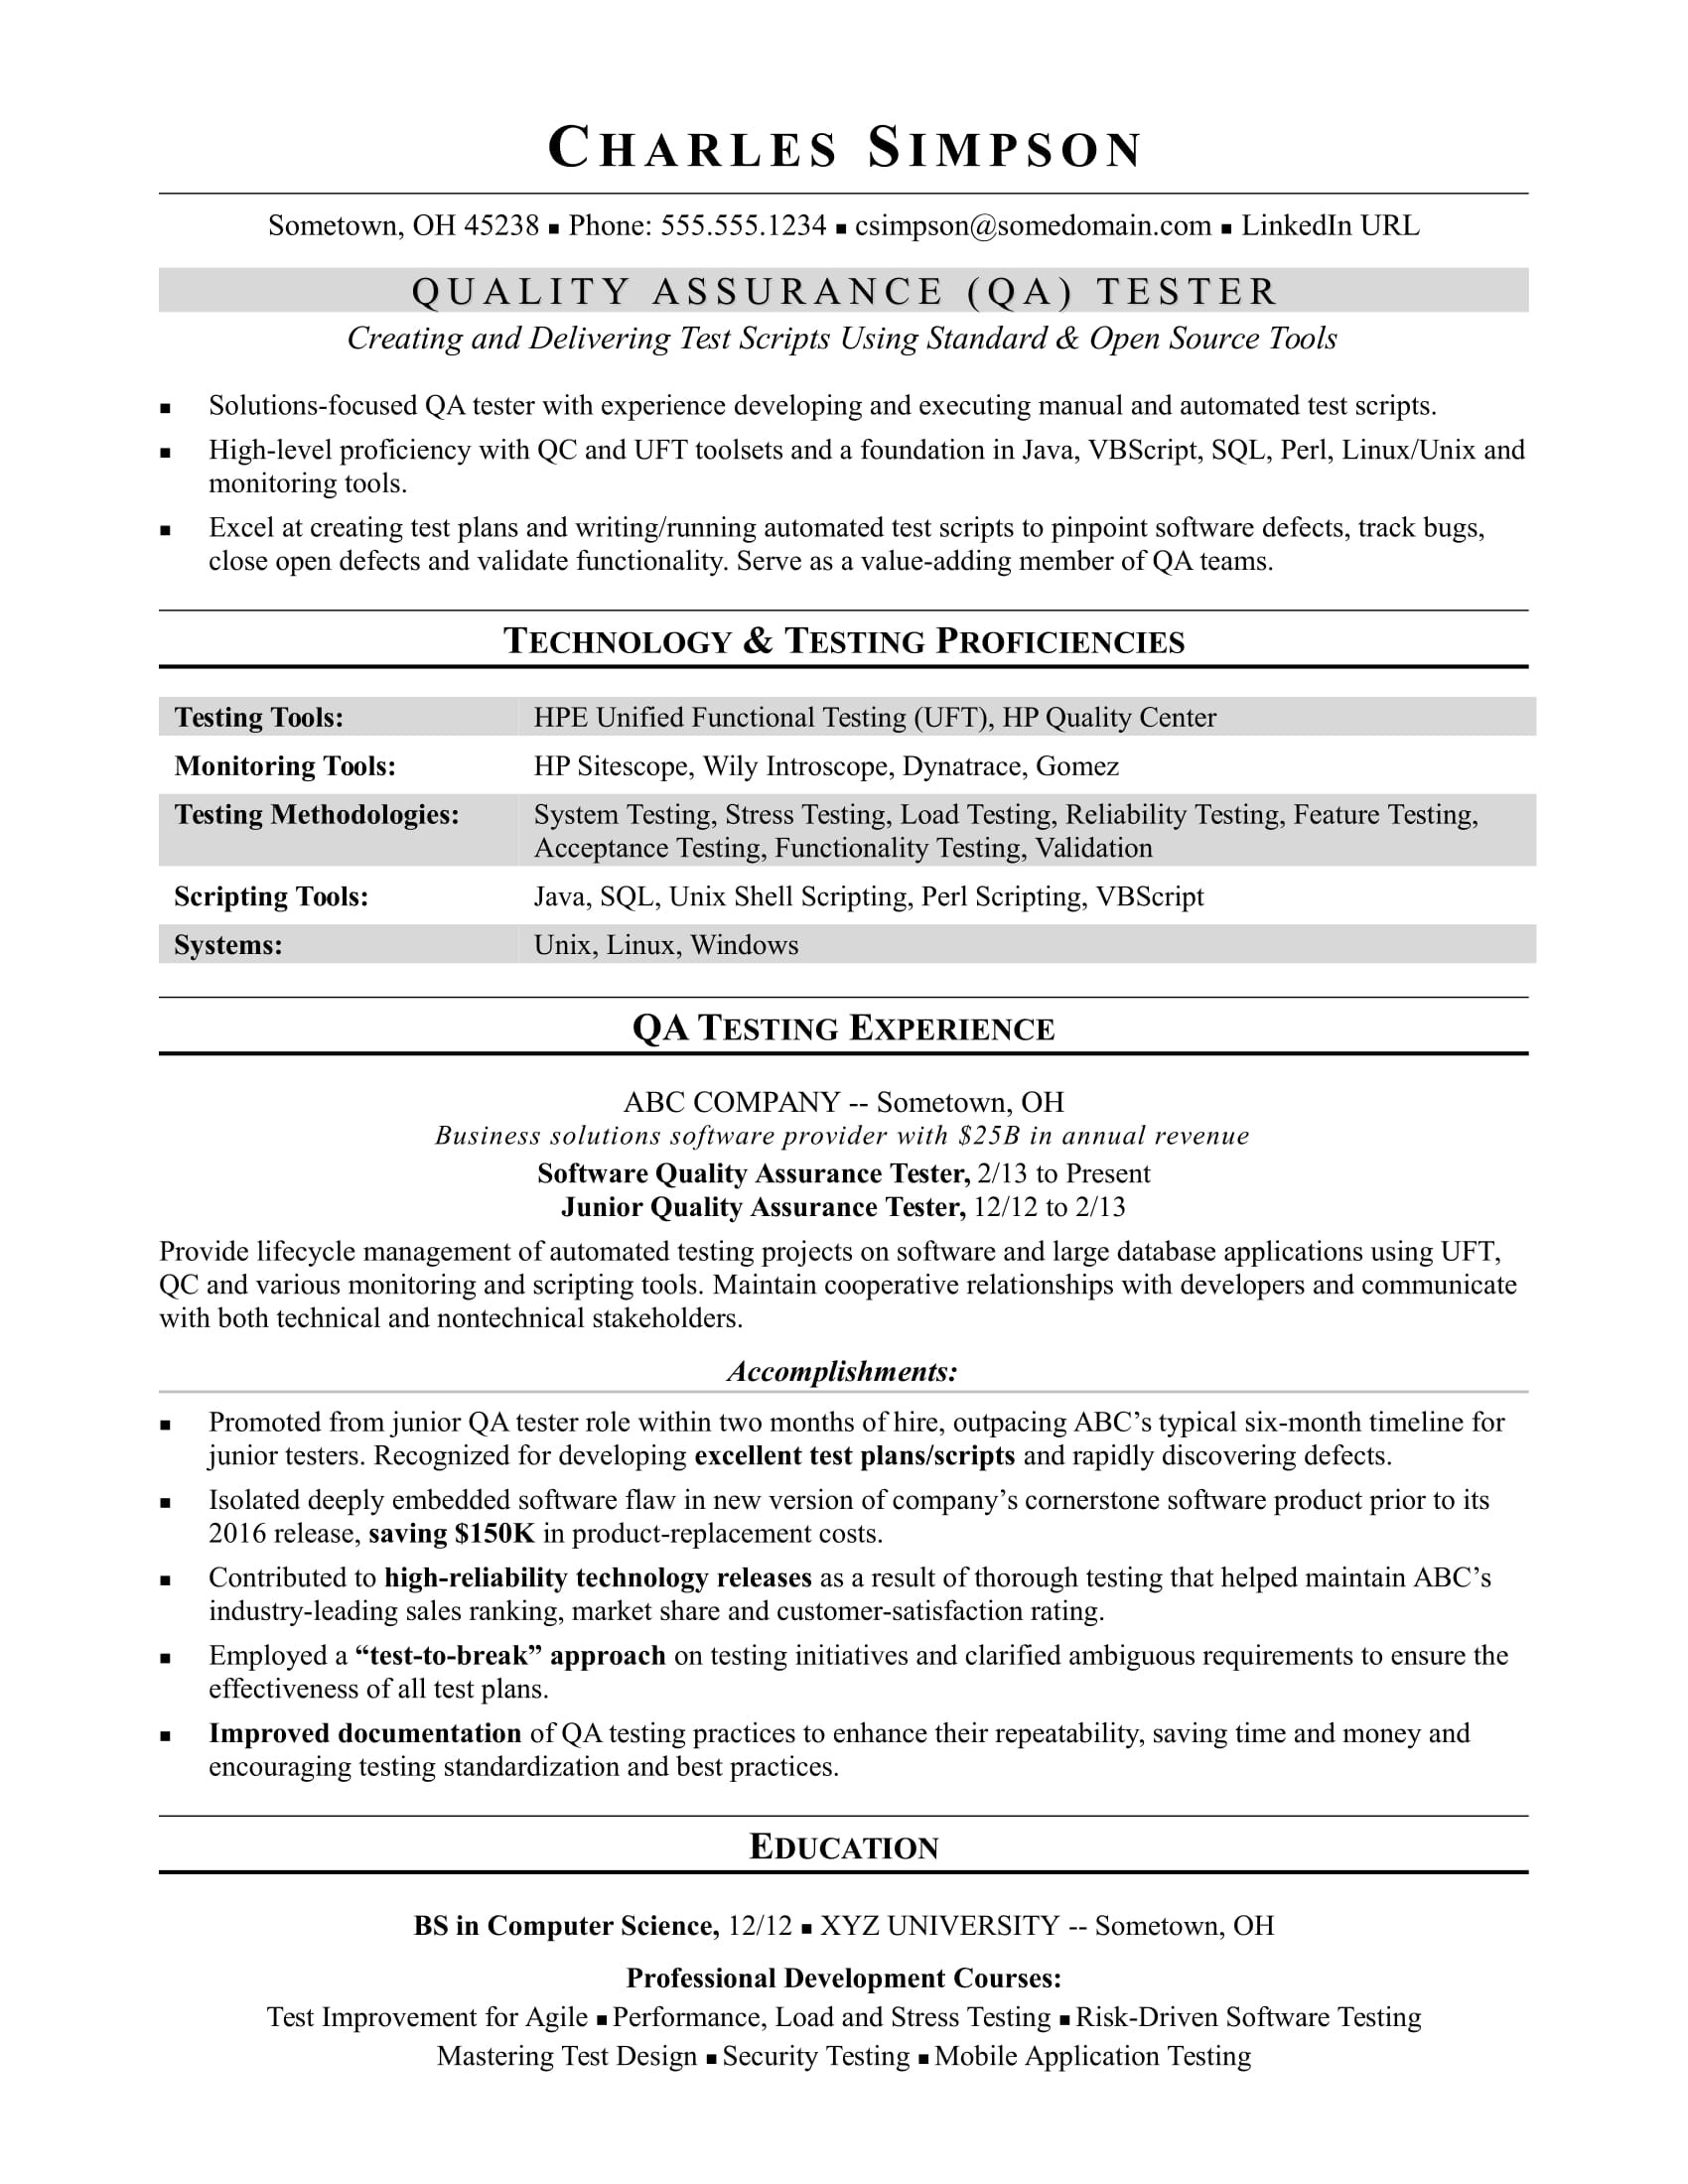 Sample Resume for Entry Level Manual Qa Tester Sample Resume for A Midlevel Qa software Tester Monster.com